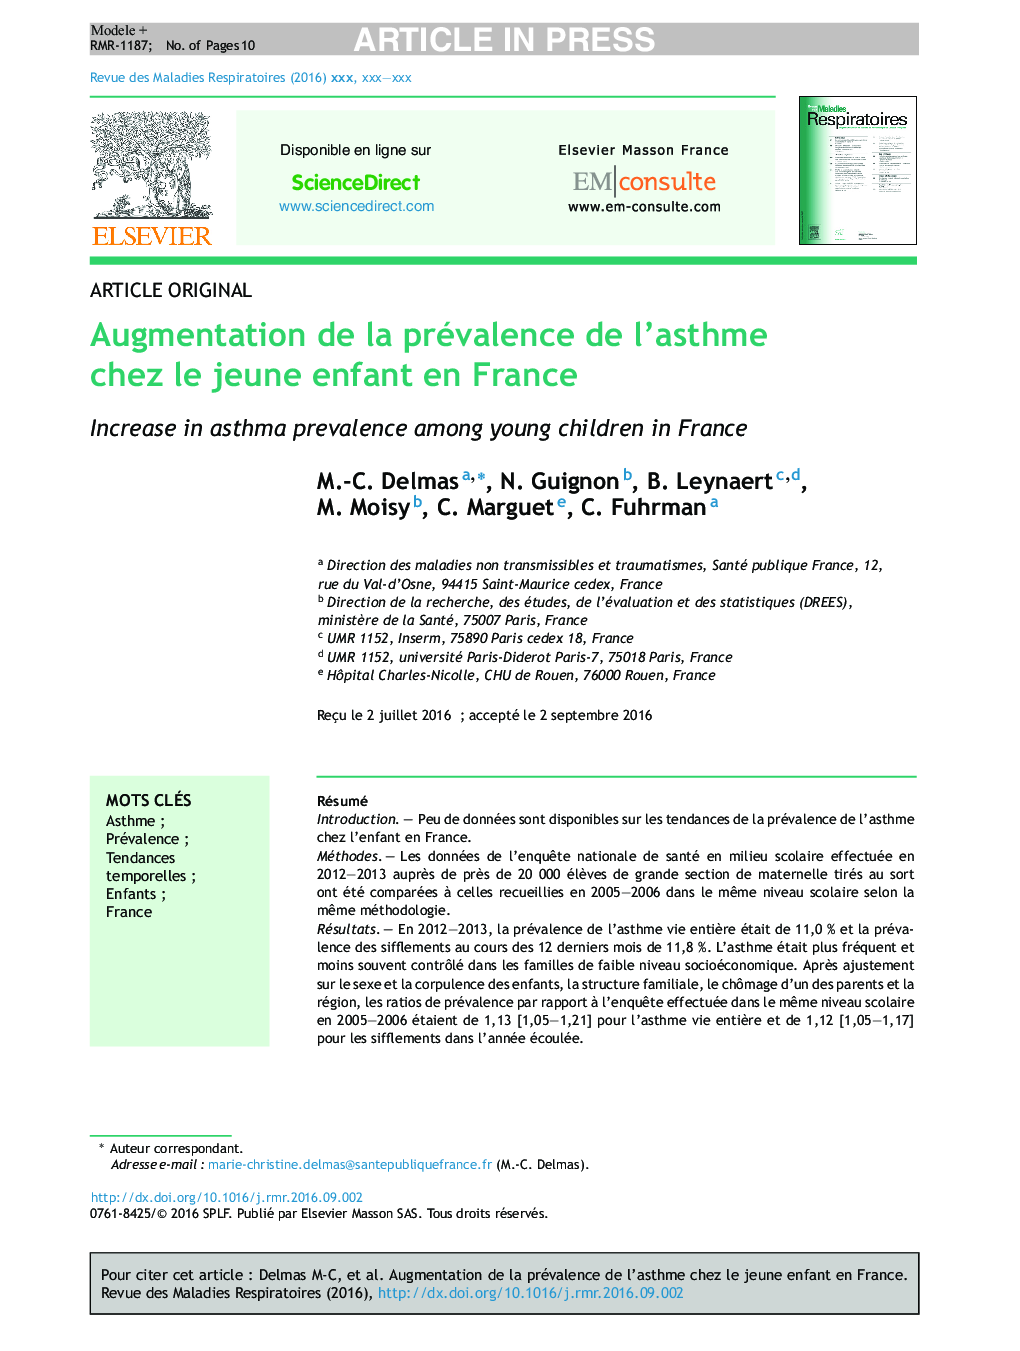 Augmentation de la prévalence de l'asthme chez le jeune enfant en France